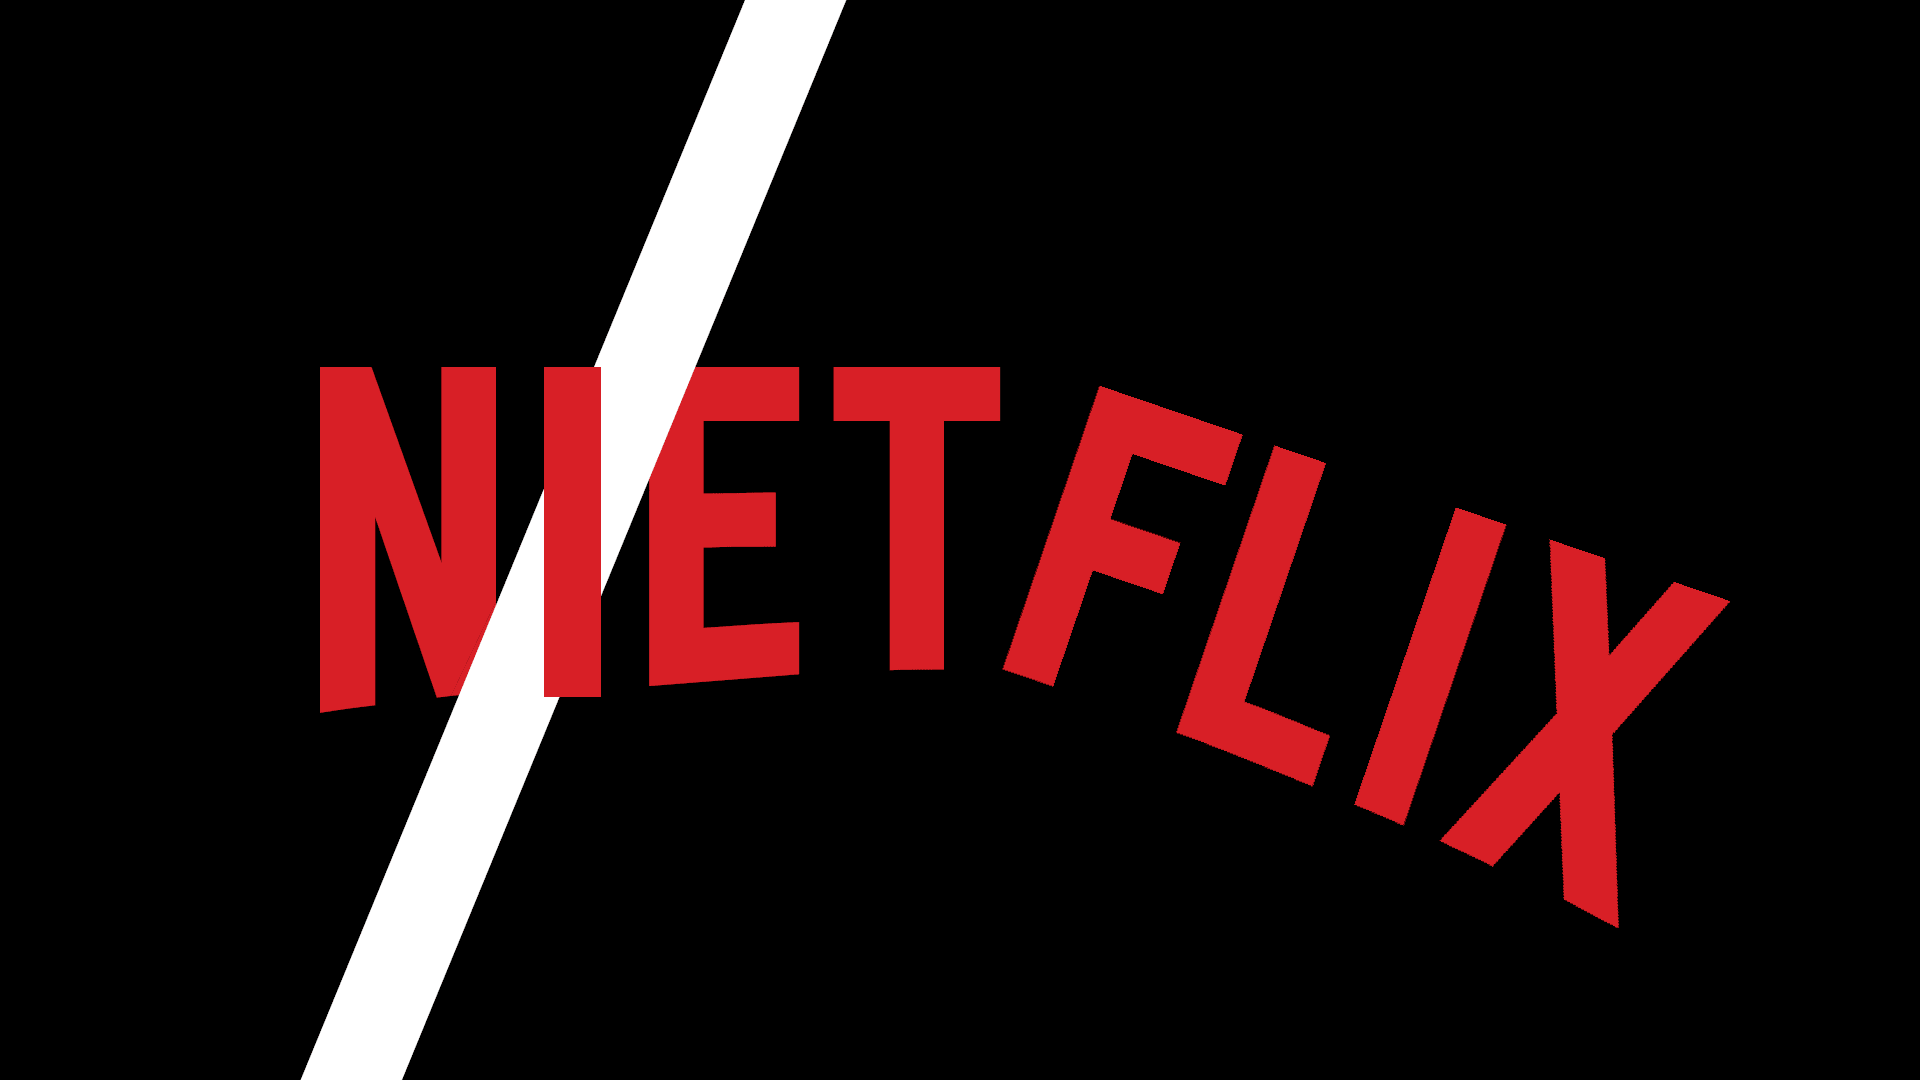 Niet-flix (czyli Nie dla Netflixa)